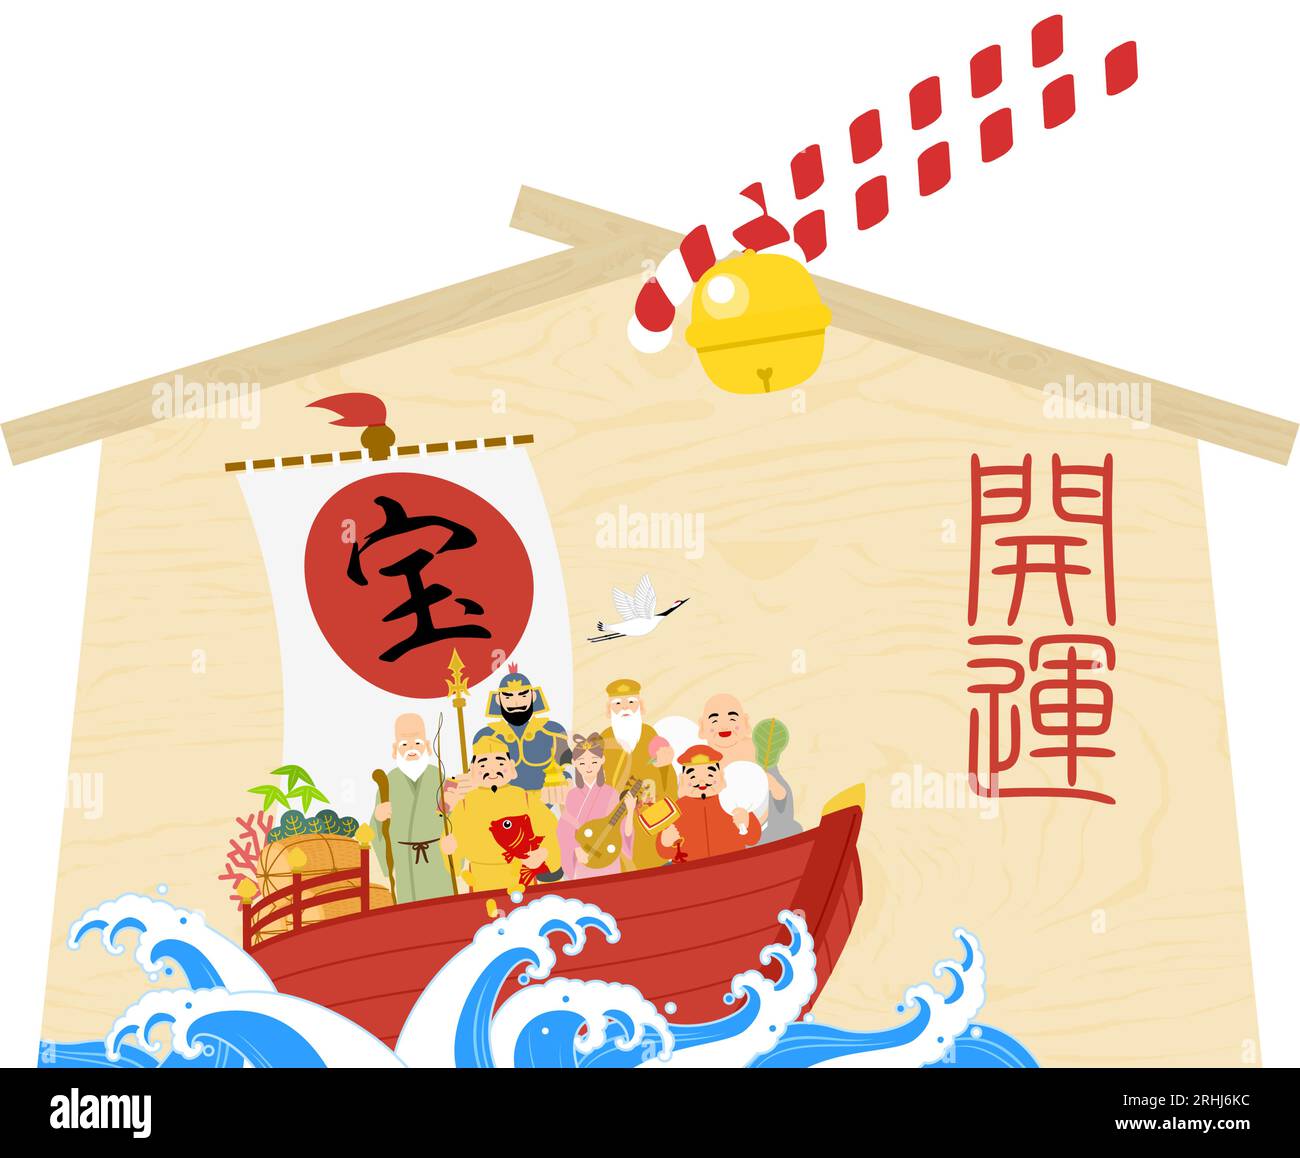 Japanisches Material von sieben Göttern des Glücks und Schatzboot ema, Gott des Glücks - Übersetzung: Schatz. Viel Glück. Stock Vektor